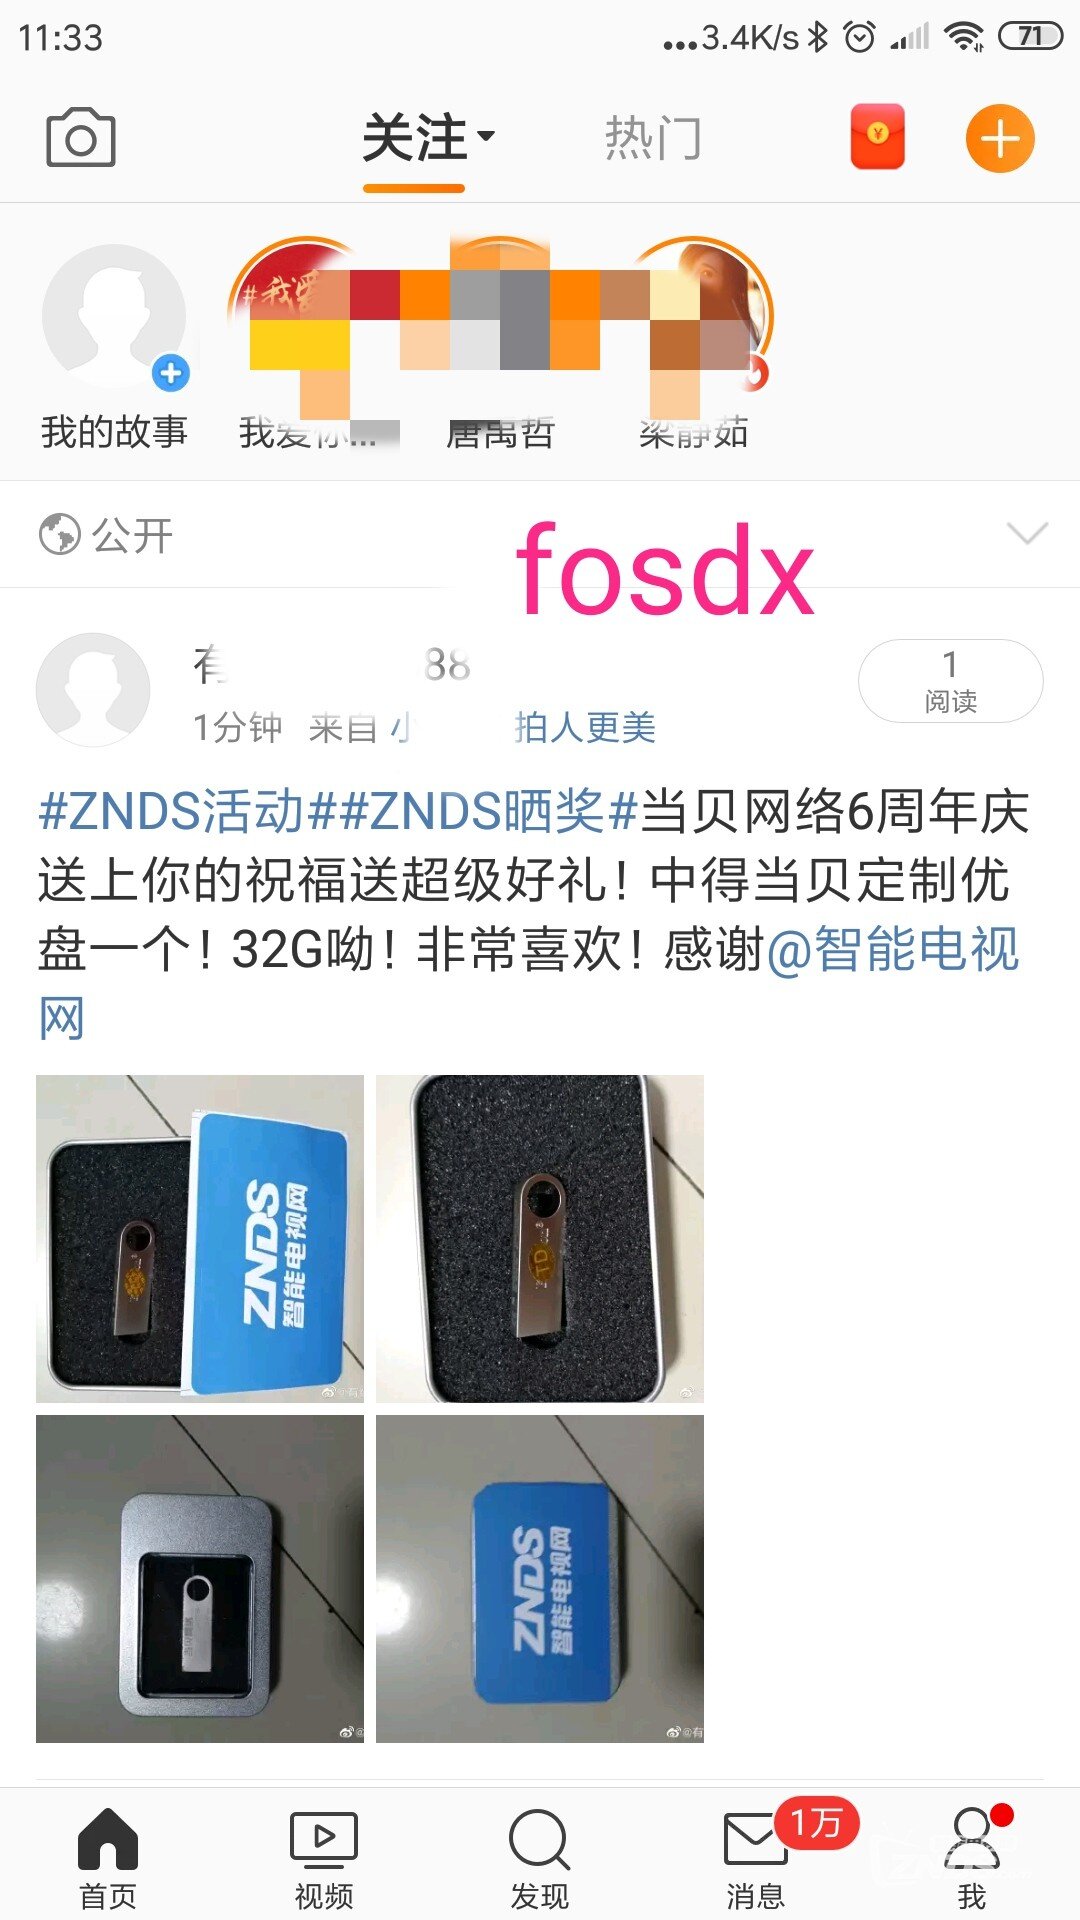 Screenshot_2019-10-12-11-33-09-928_com.sina.weibo.png